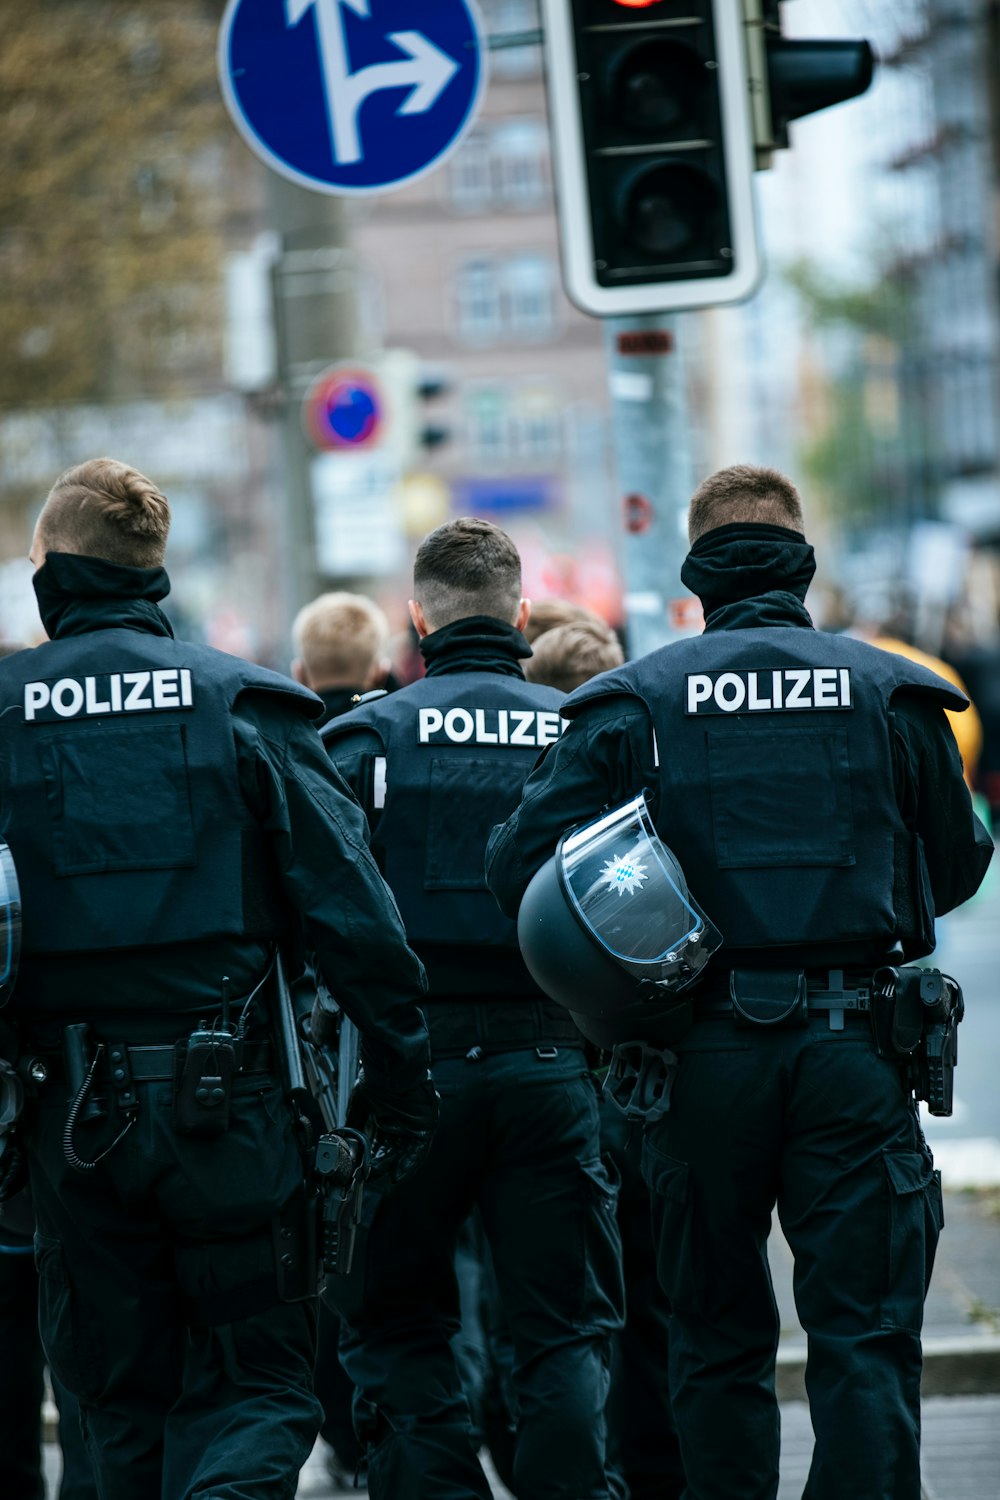 poliziotti in uniforme nera e blu della polizia in piedi sulla strada durante il giorno